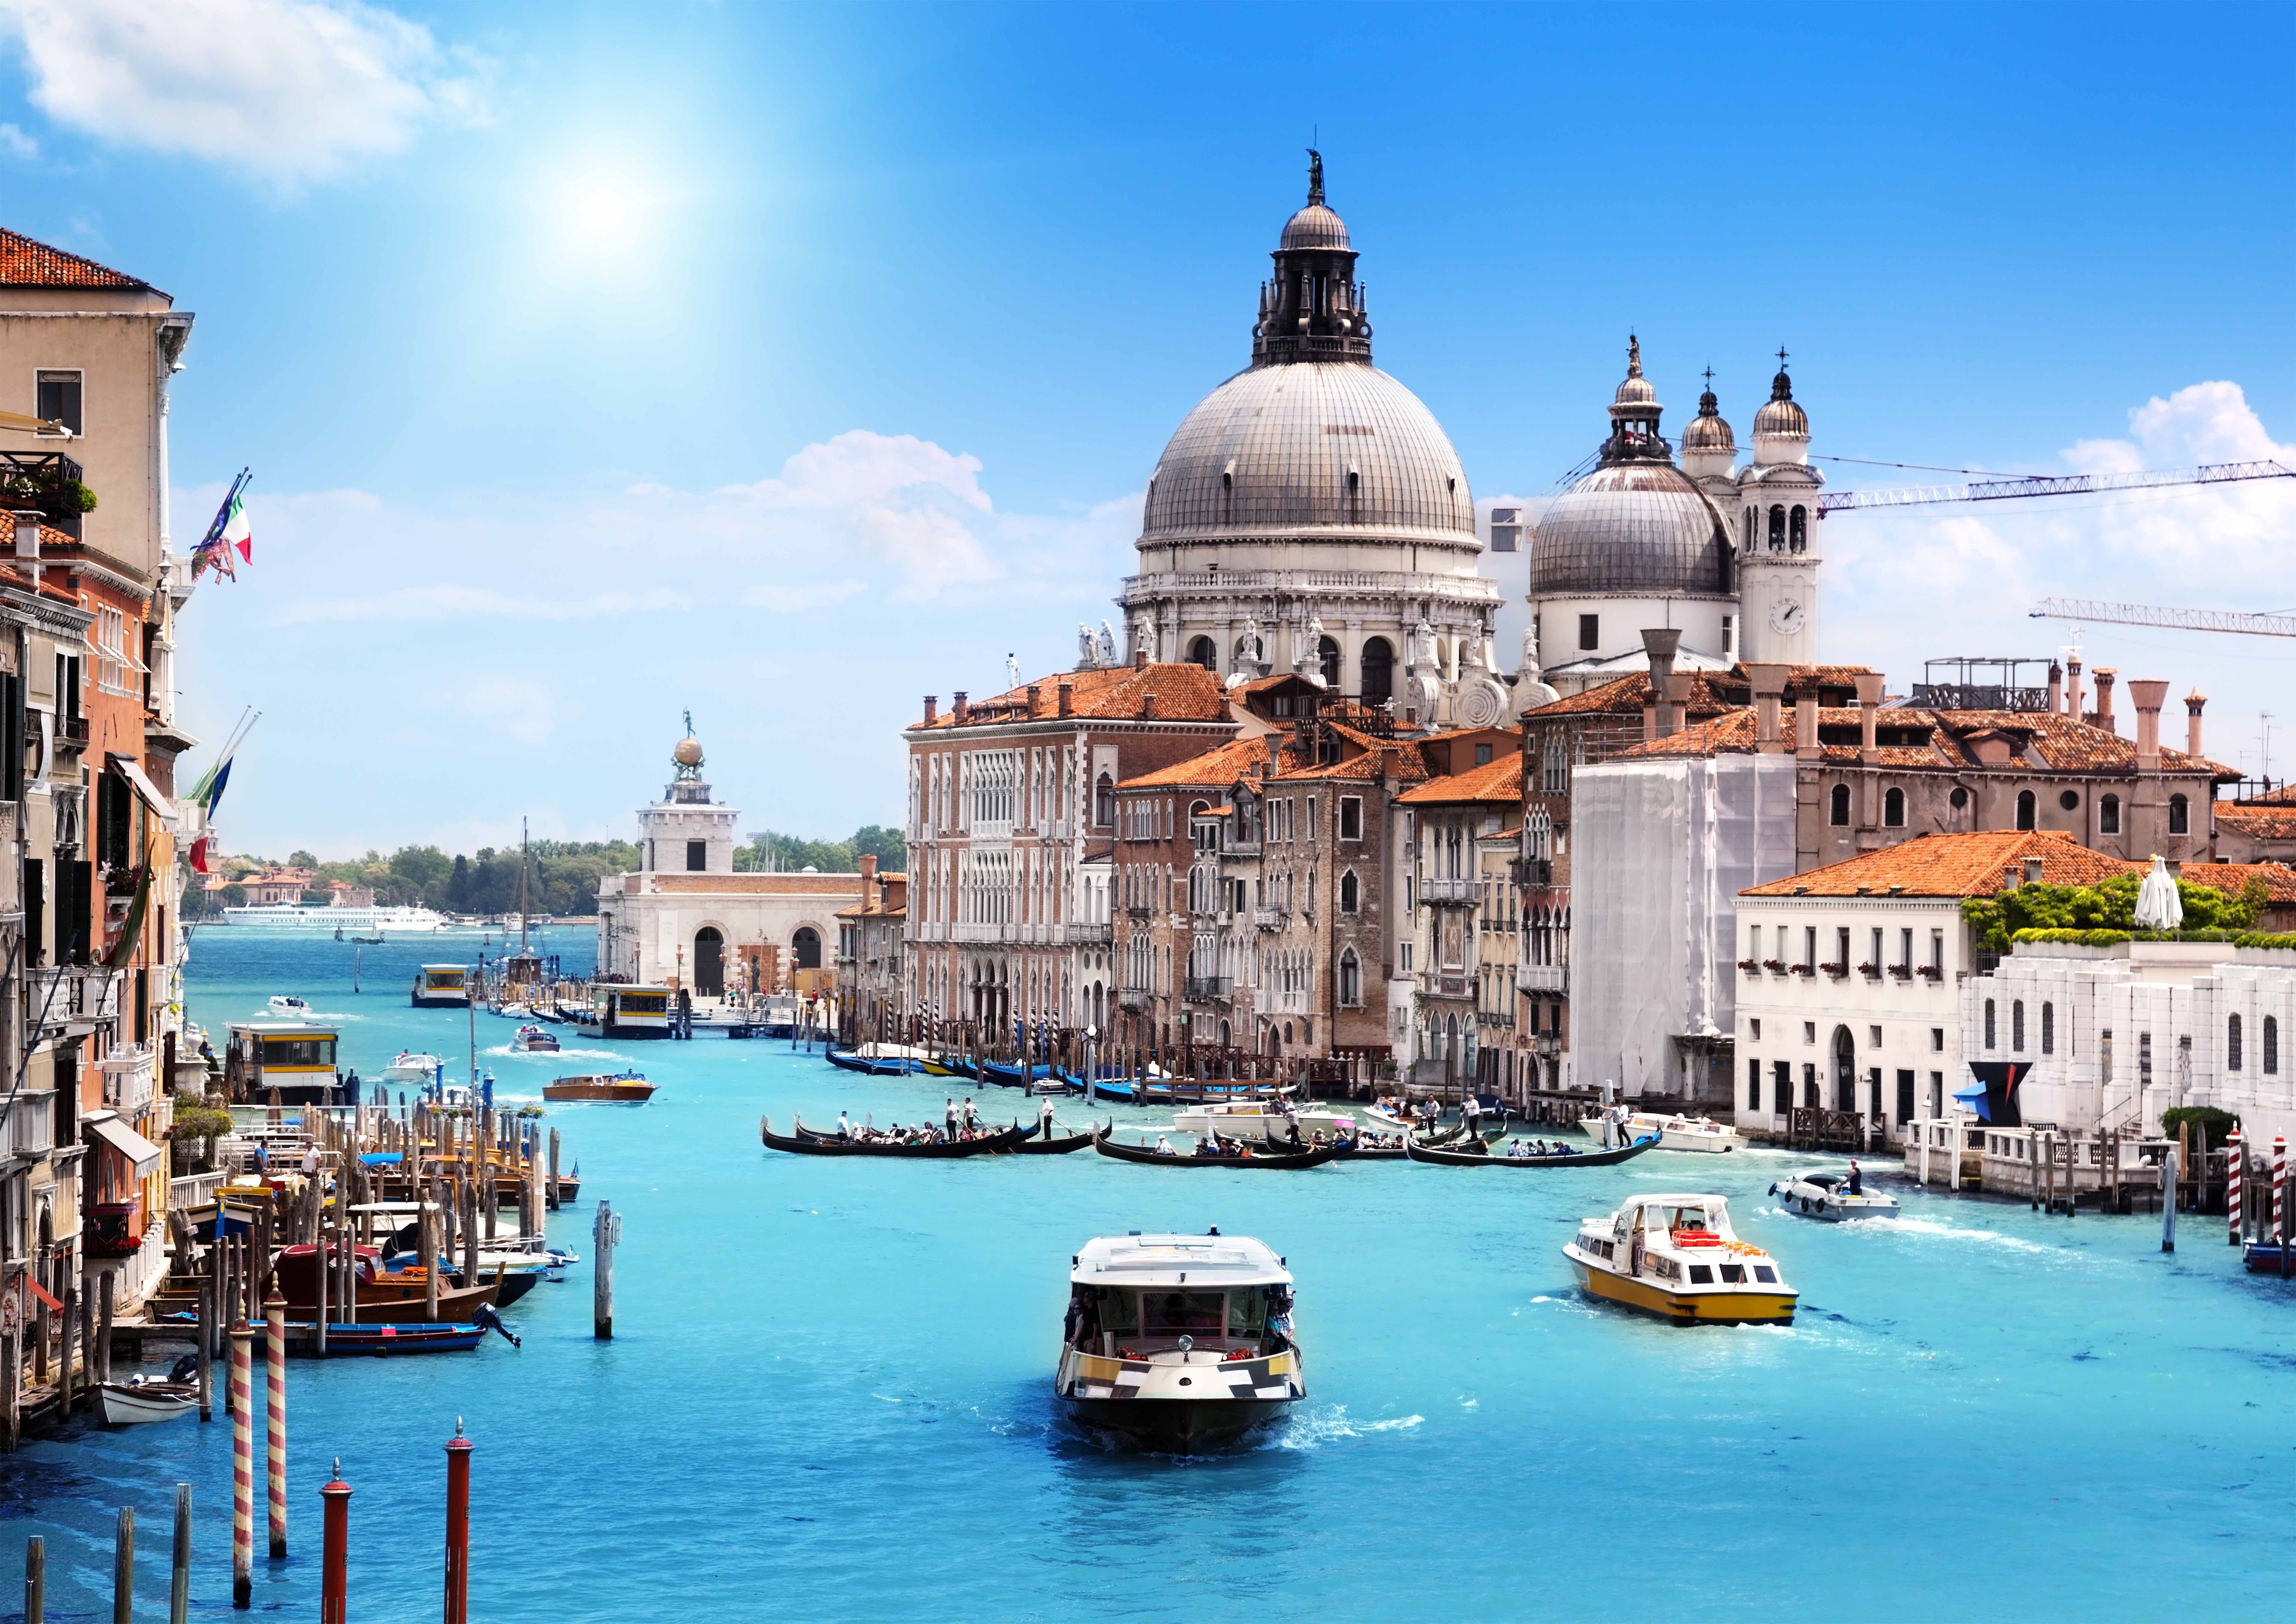 May 17-21 : Impressive Italy : Venice & Milan